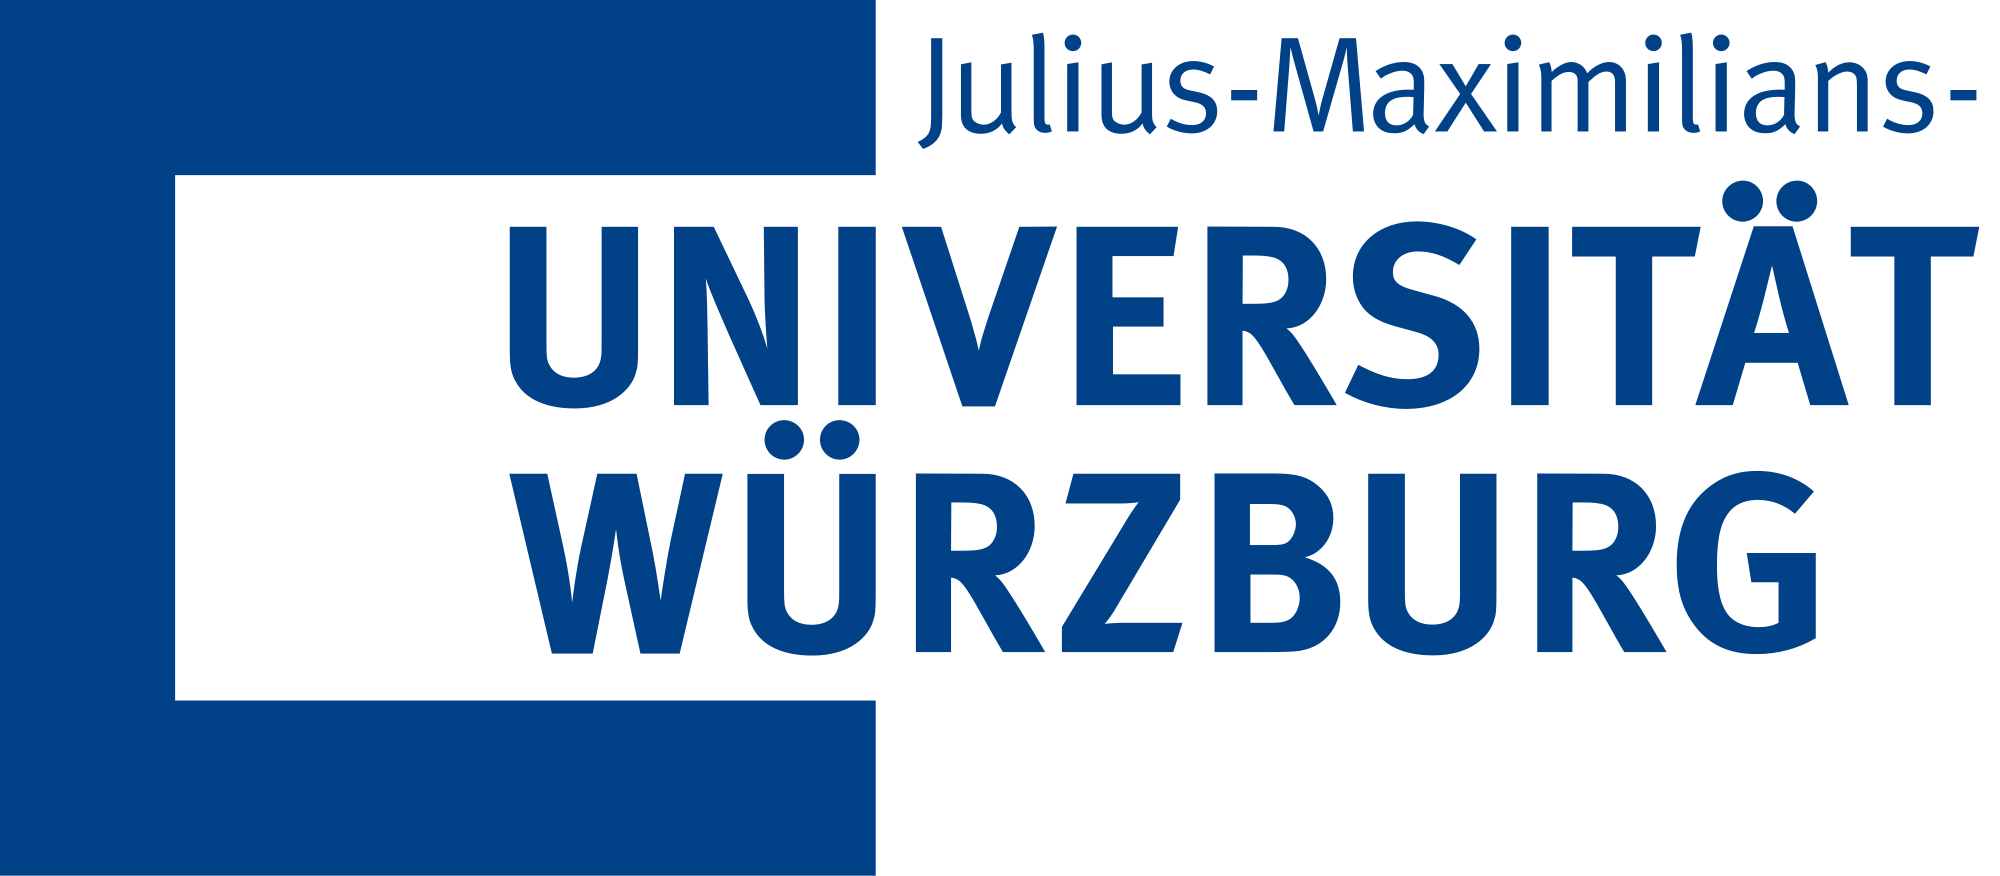 Вюрцбургский университет имени Юлиуса и Максимилиана